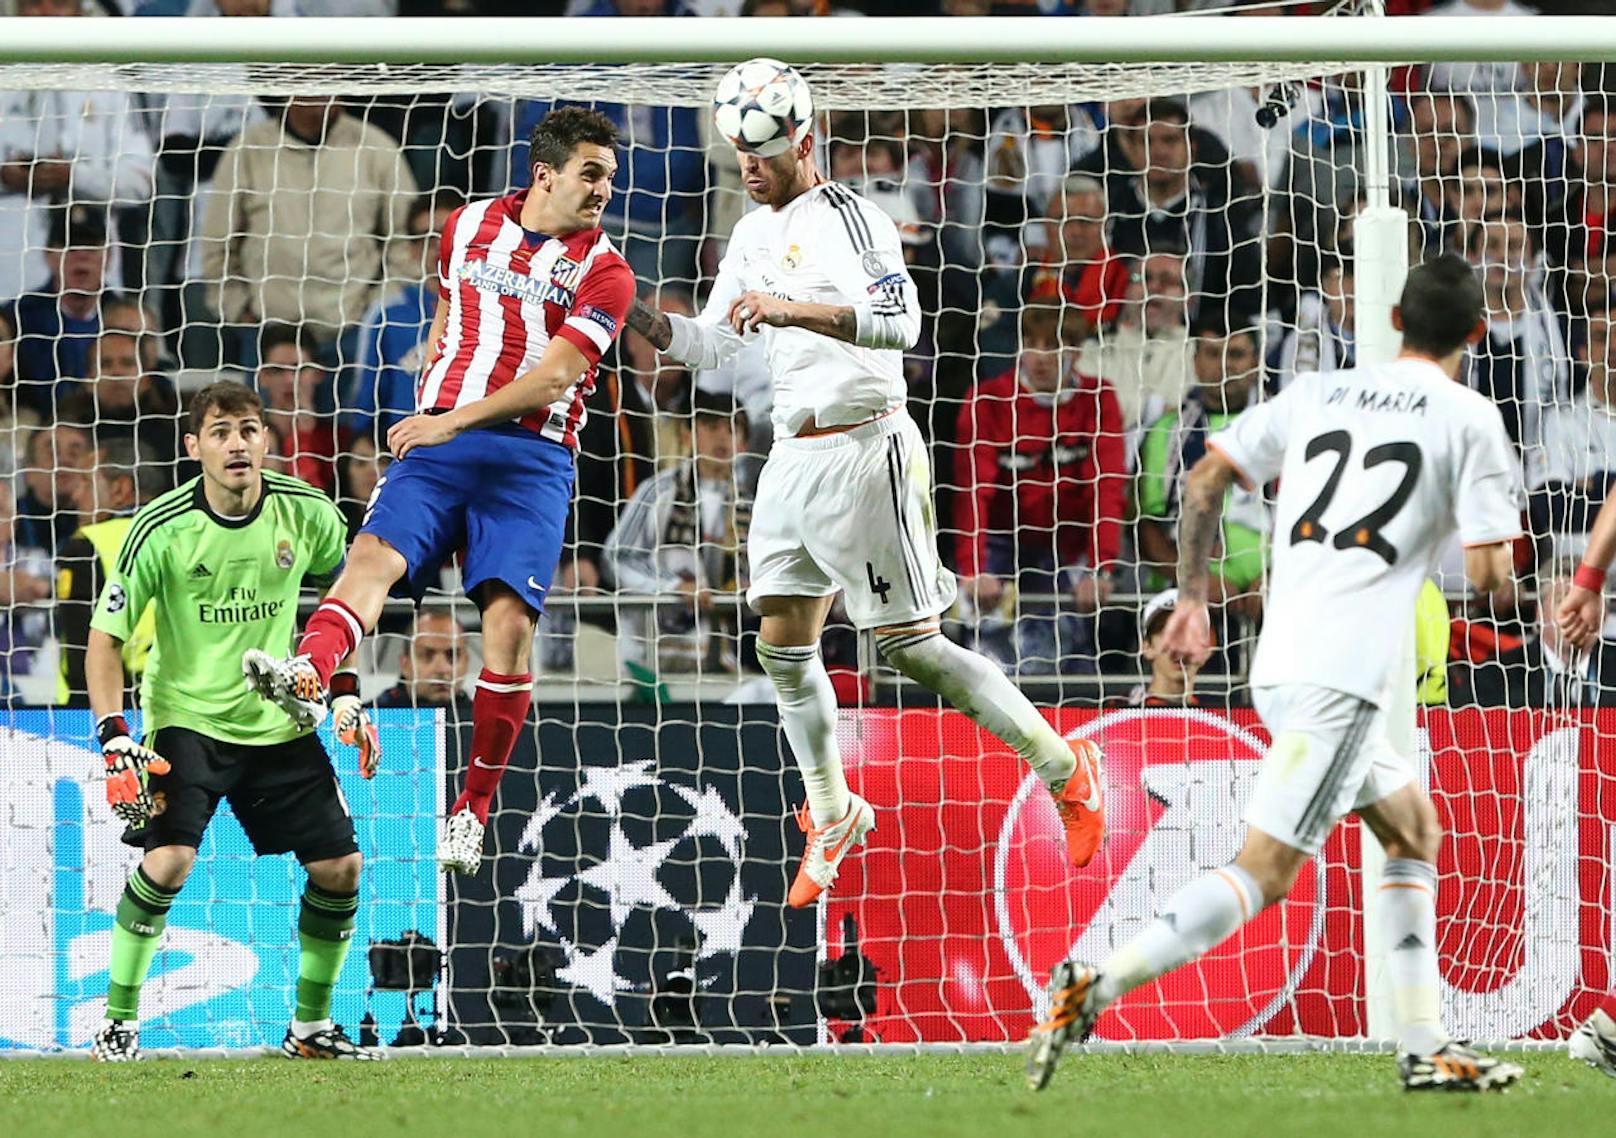 Danach begann die spanische Herrschaft. Real Madrid gewann 2014 gegen Stadtrivale Atletico nach Verlängerung mit 4:1.